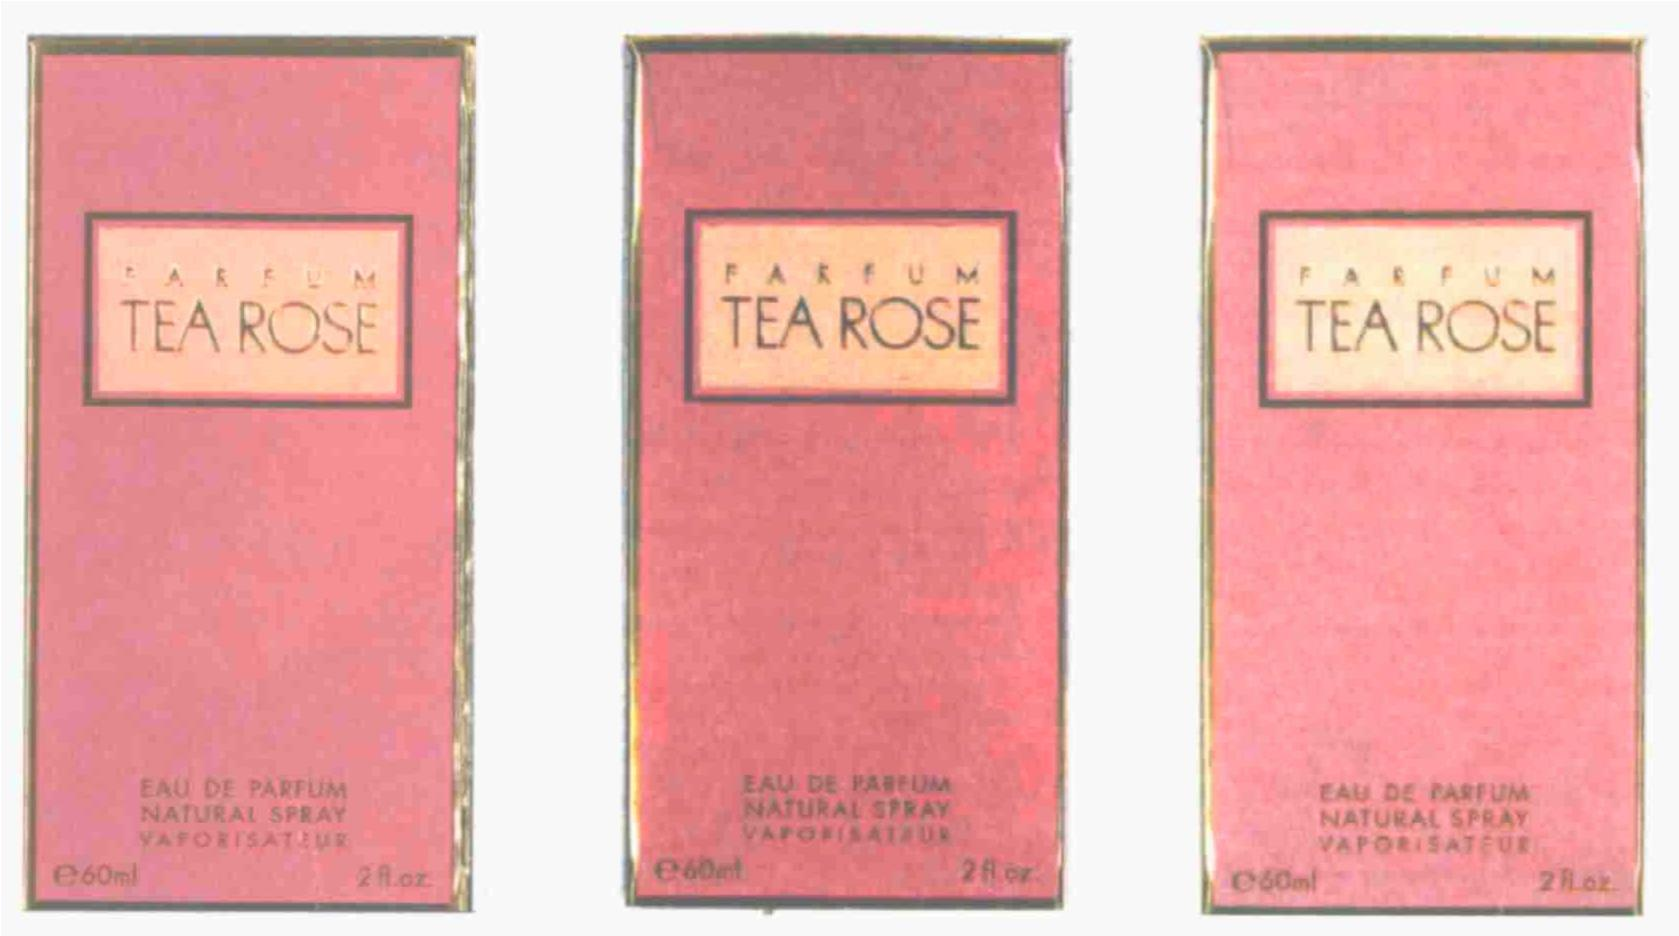  PARFUM TEA ROSE